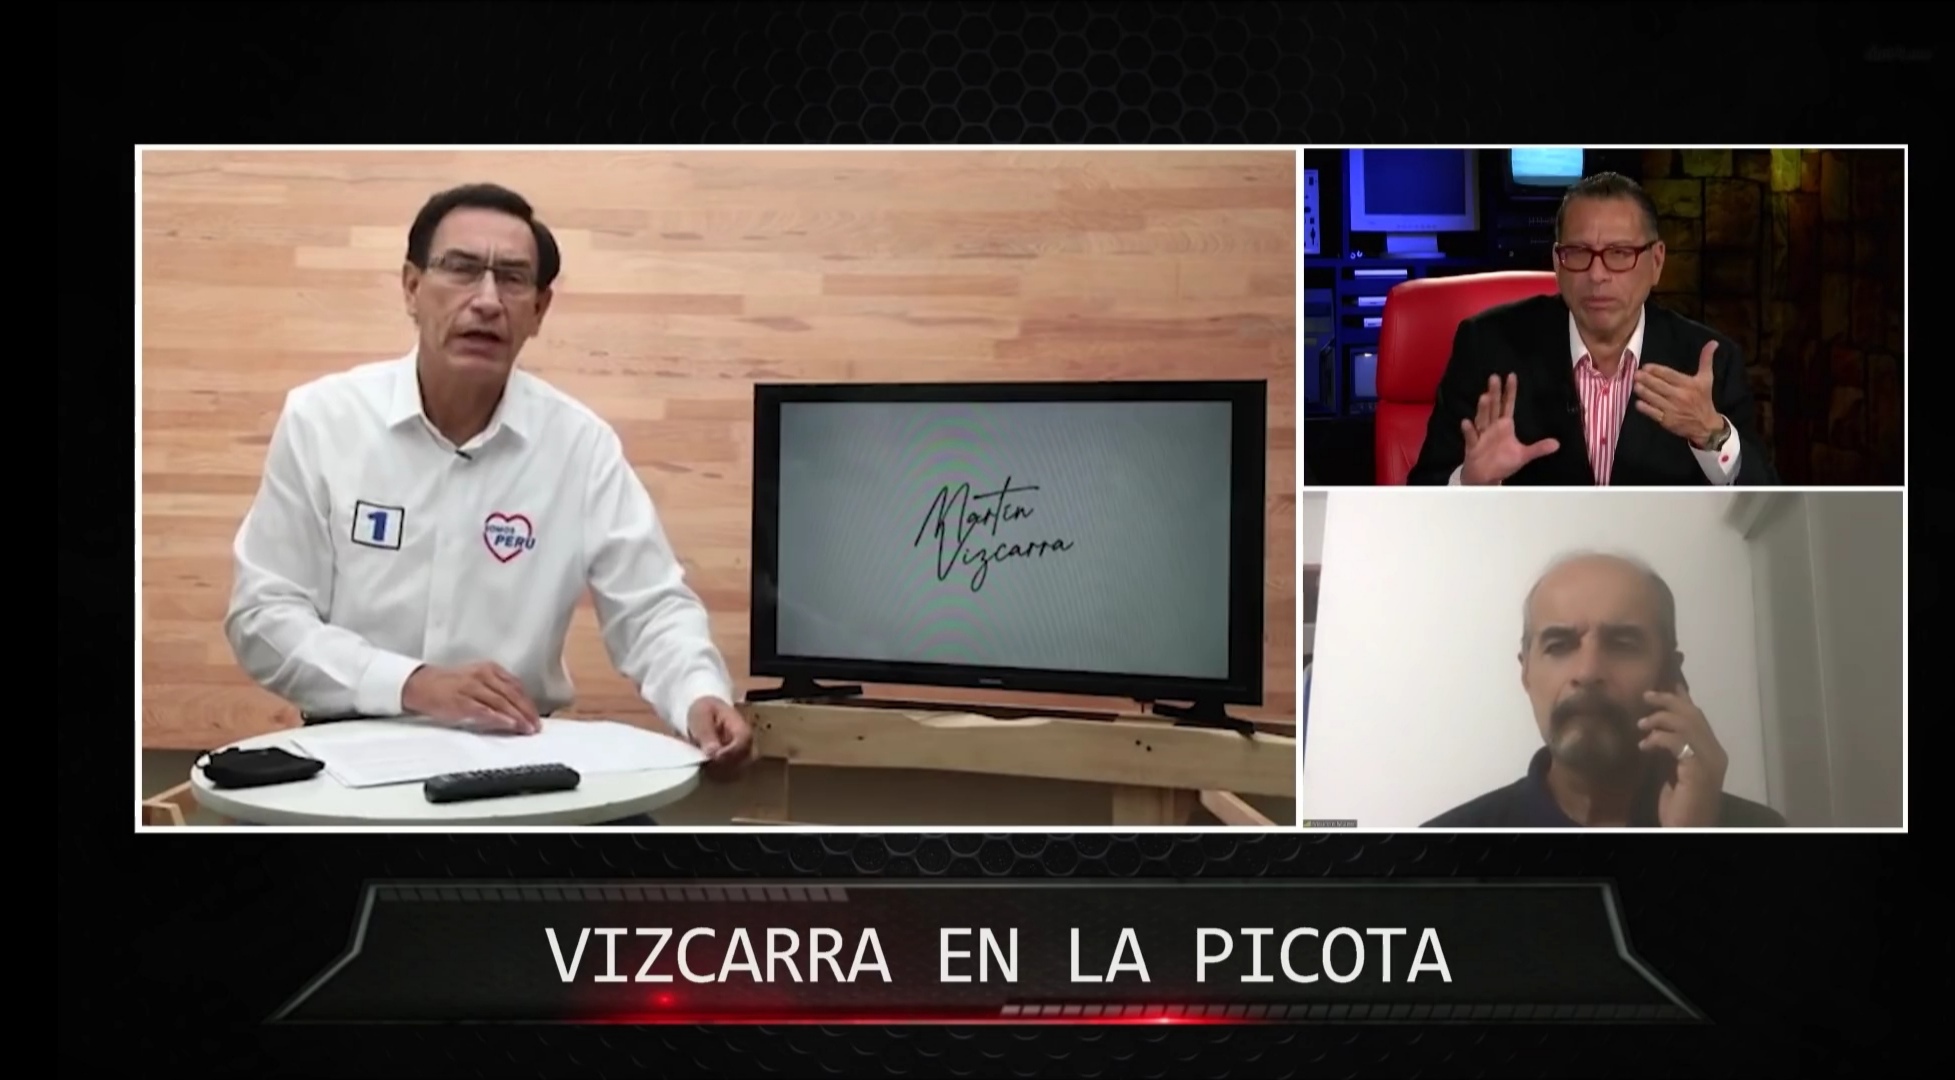 Portada: Mauricio Mulder sobre Martín Vizcarra: “El Congreso debe inhabilitarlo”